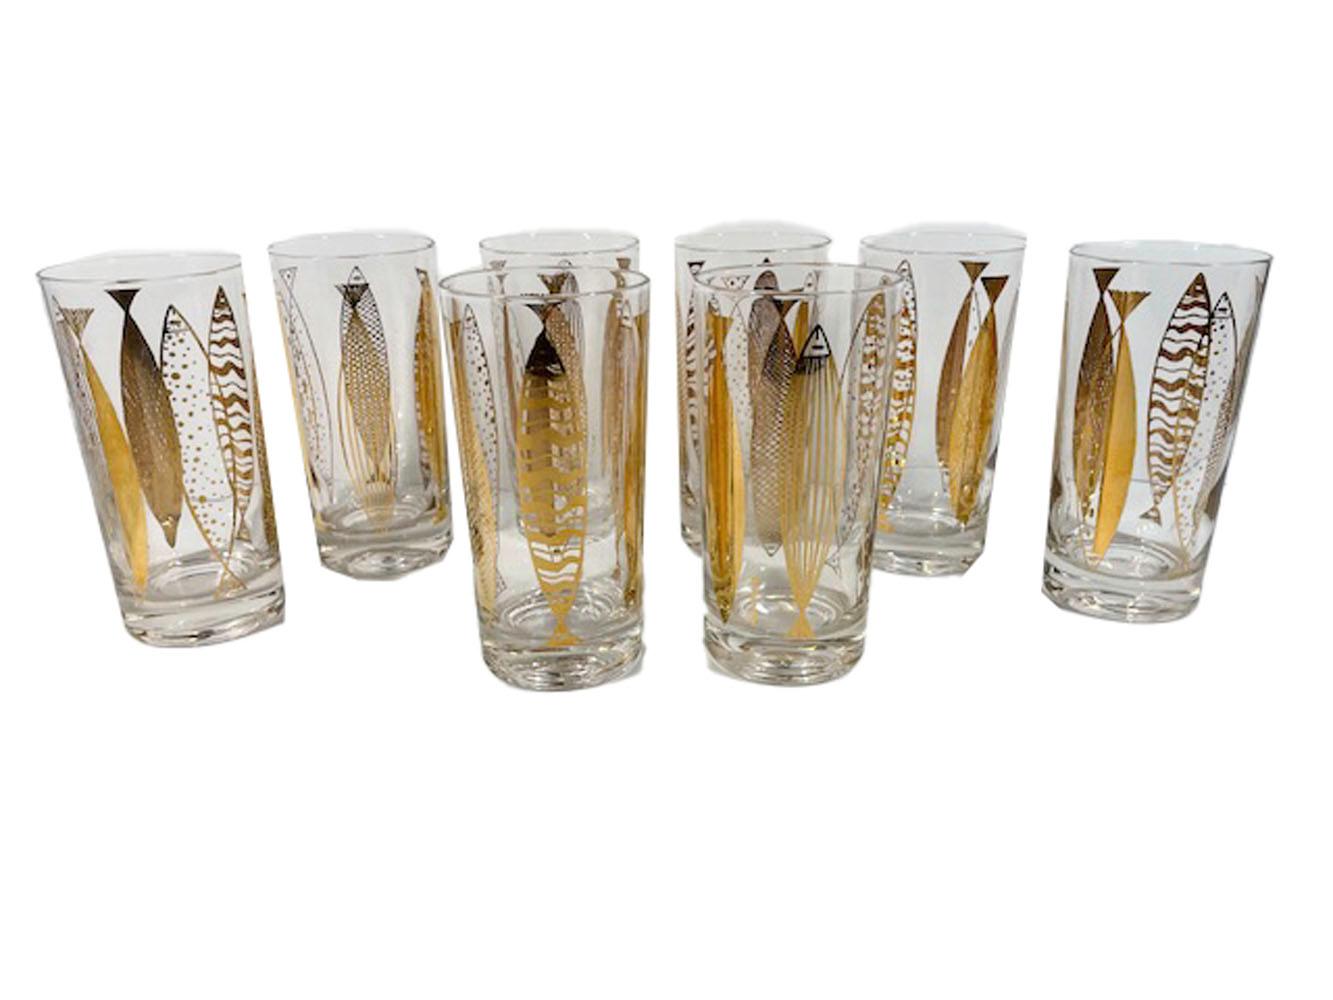 Huit verres highball de style Mid-Century Modern conçus par Fred Press, avec des poissons en or 22 carats dans six motifs abstraits différents, placés verticalement autour de chaque verre.